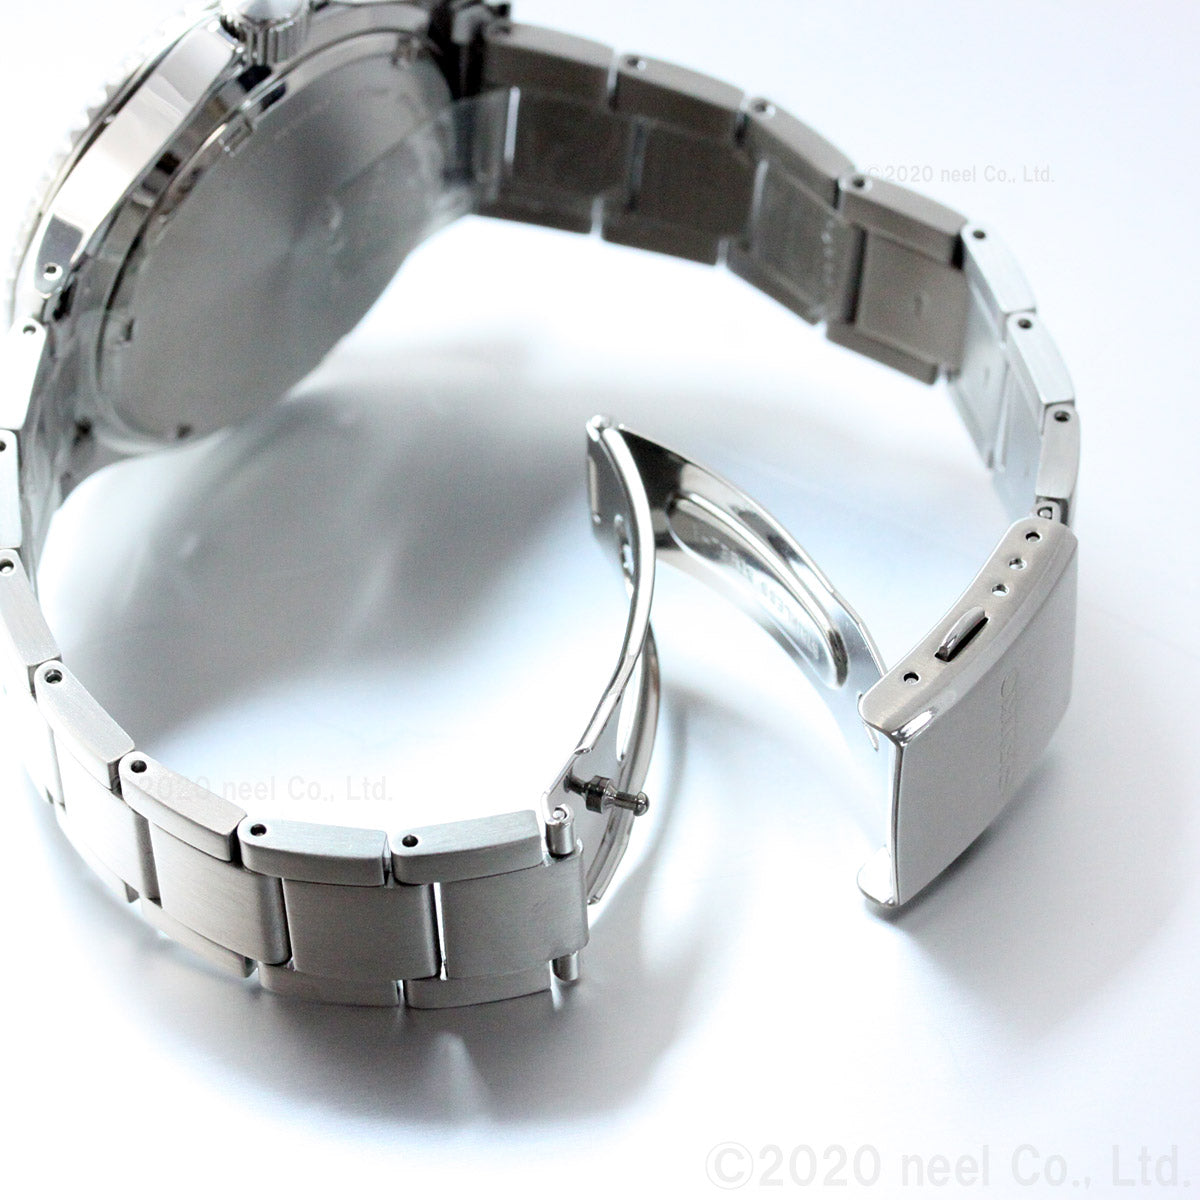 セイコー ソーラー SEIKO SOLAR ショップ限定モデル ヴィンテージデザイン 腕時計 メンズ SZEV011